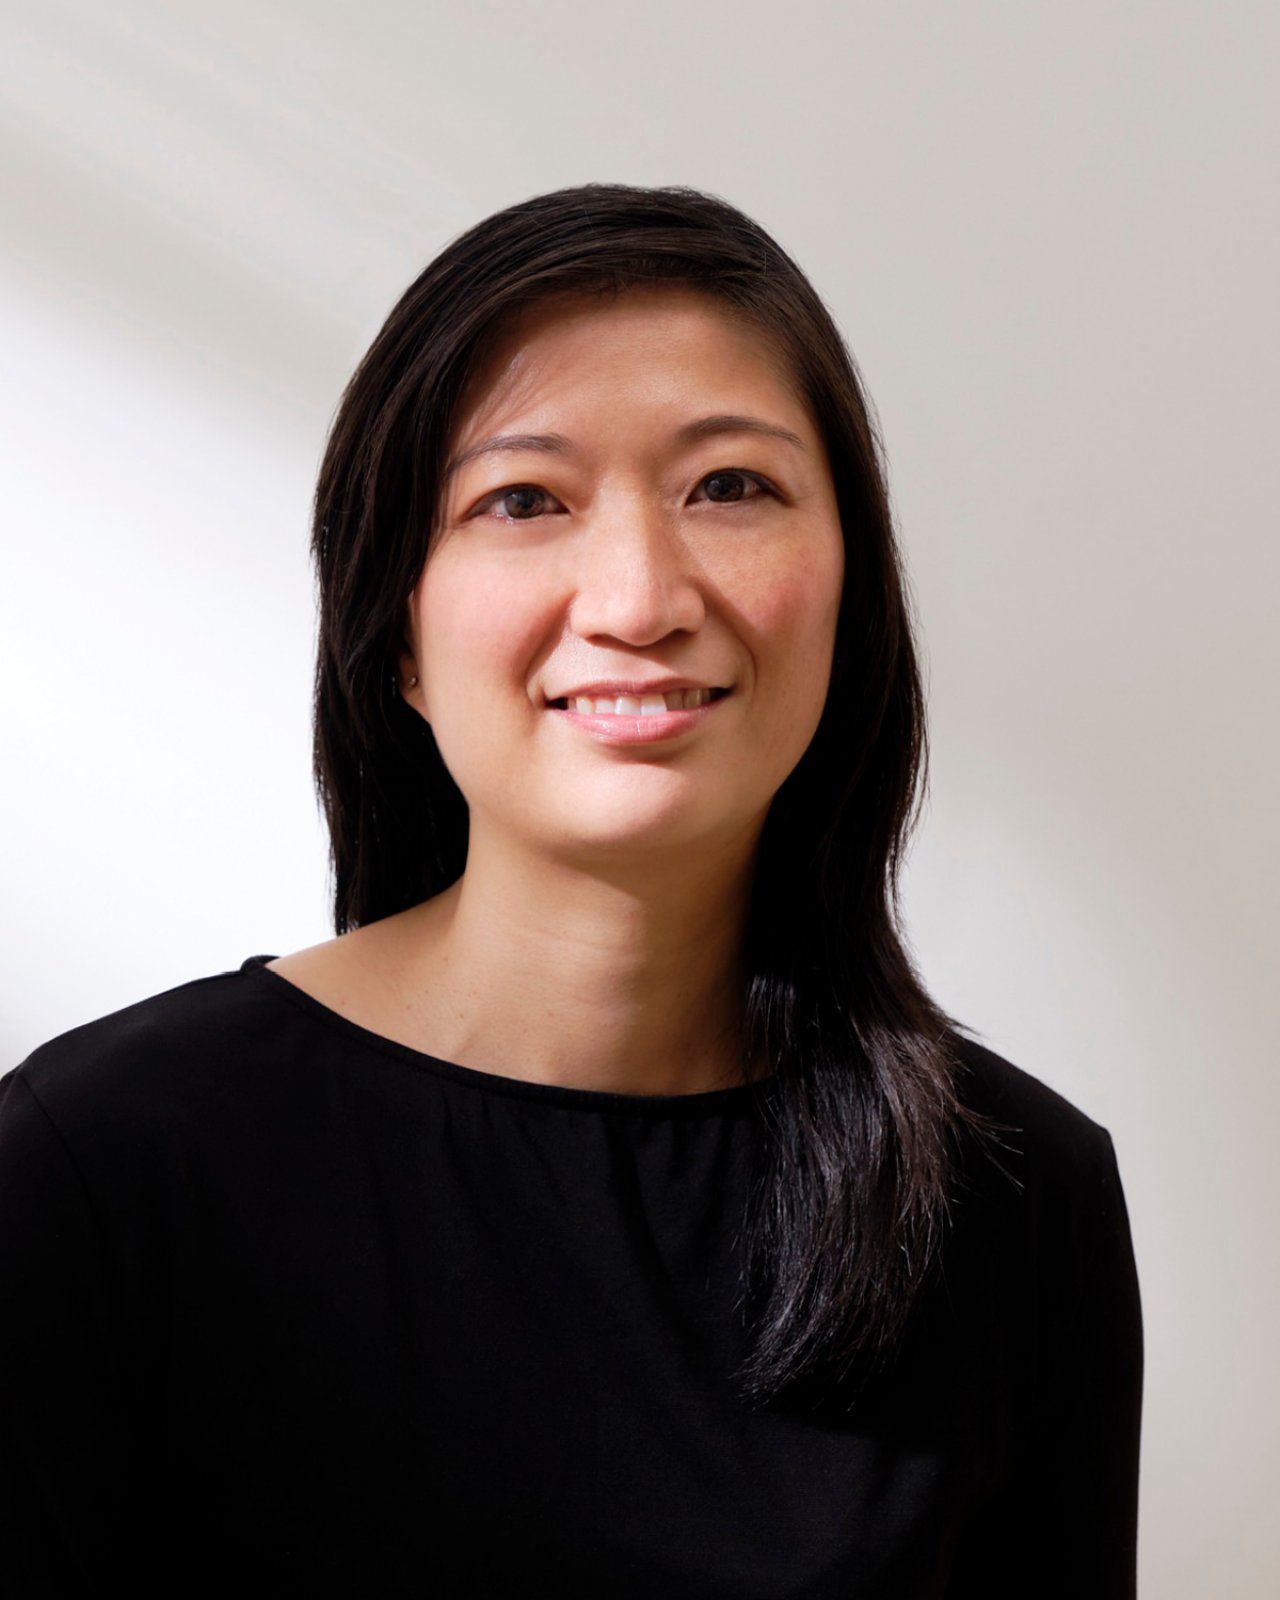 profile image of Ruth Chau.